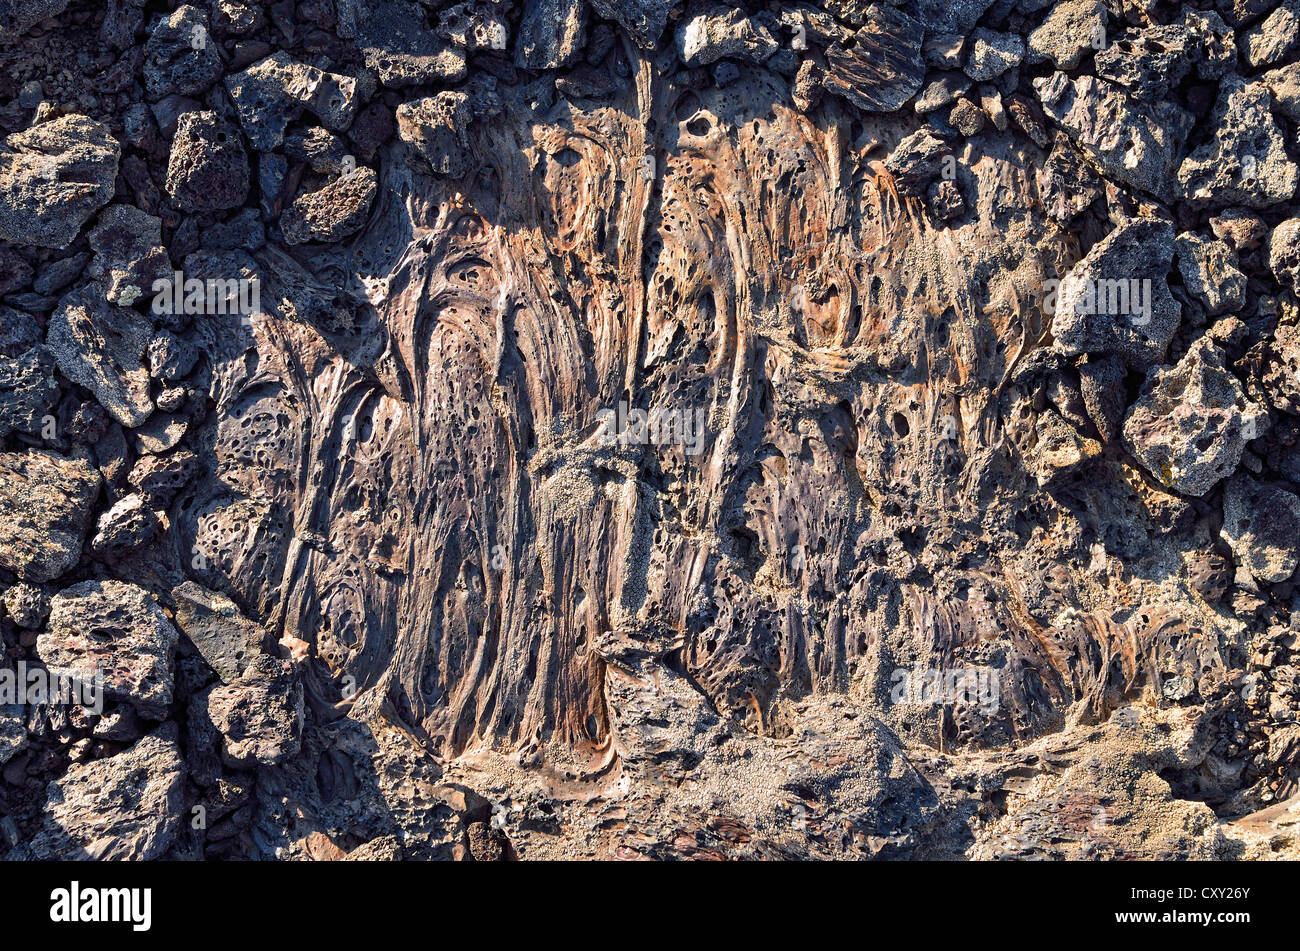 Correctifs de lave solidifiée entre les projections de roches volcaniques, cônes, cratères de la Lune National Monument, Arco, l'autoroute 20, New York Banque D'Images